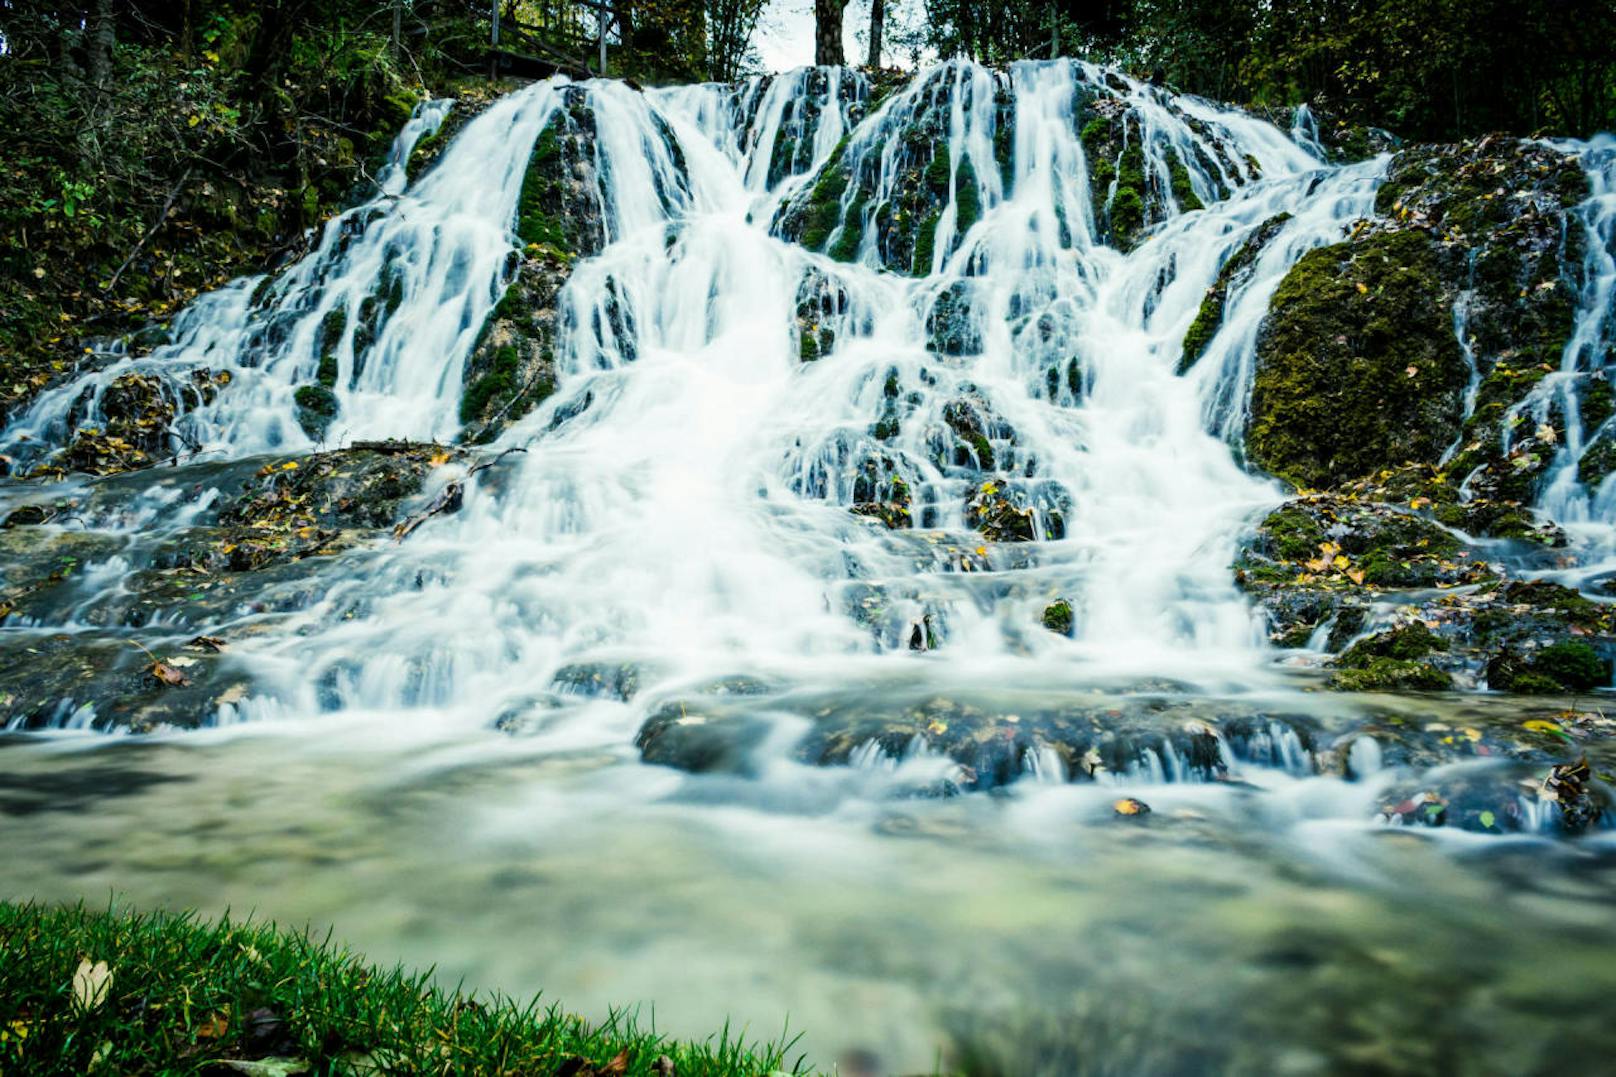 Daniel liebt: "Einen kleinen Wasserfall (Schleierfall) in Hohenberg in Niederösterreich